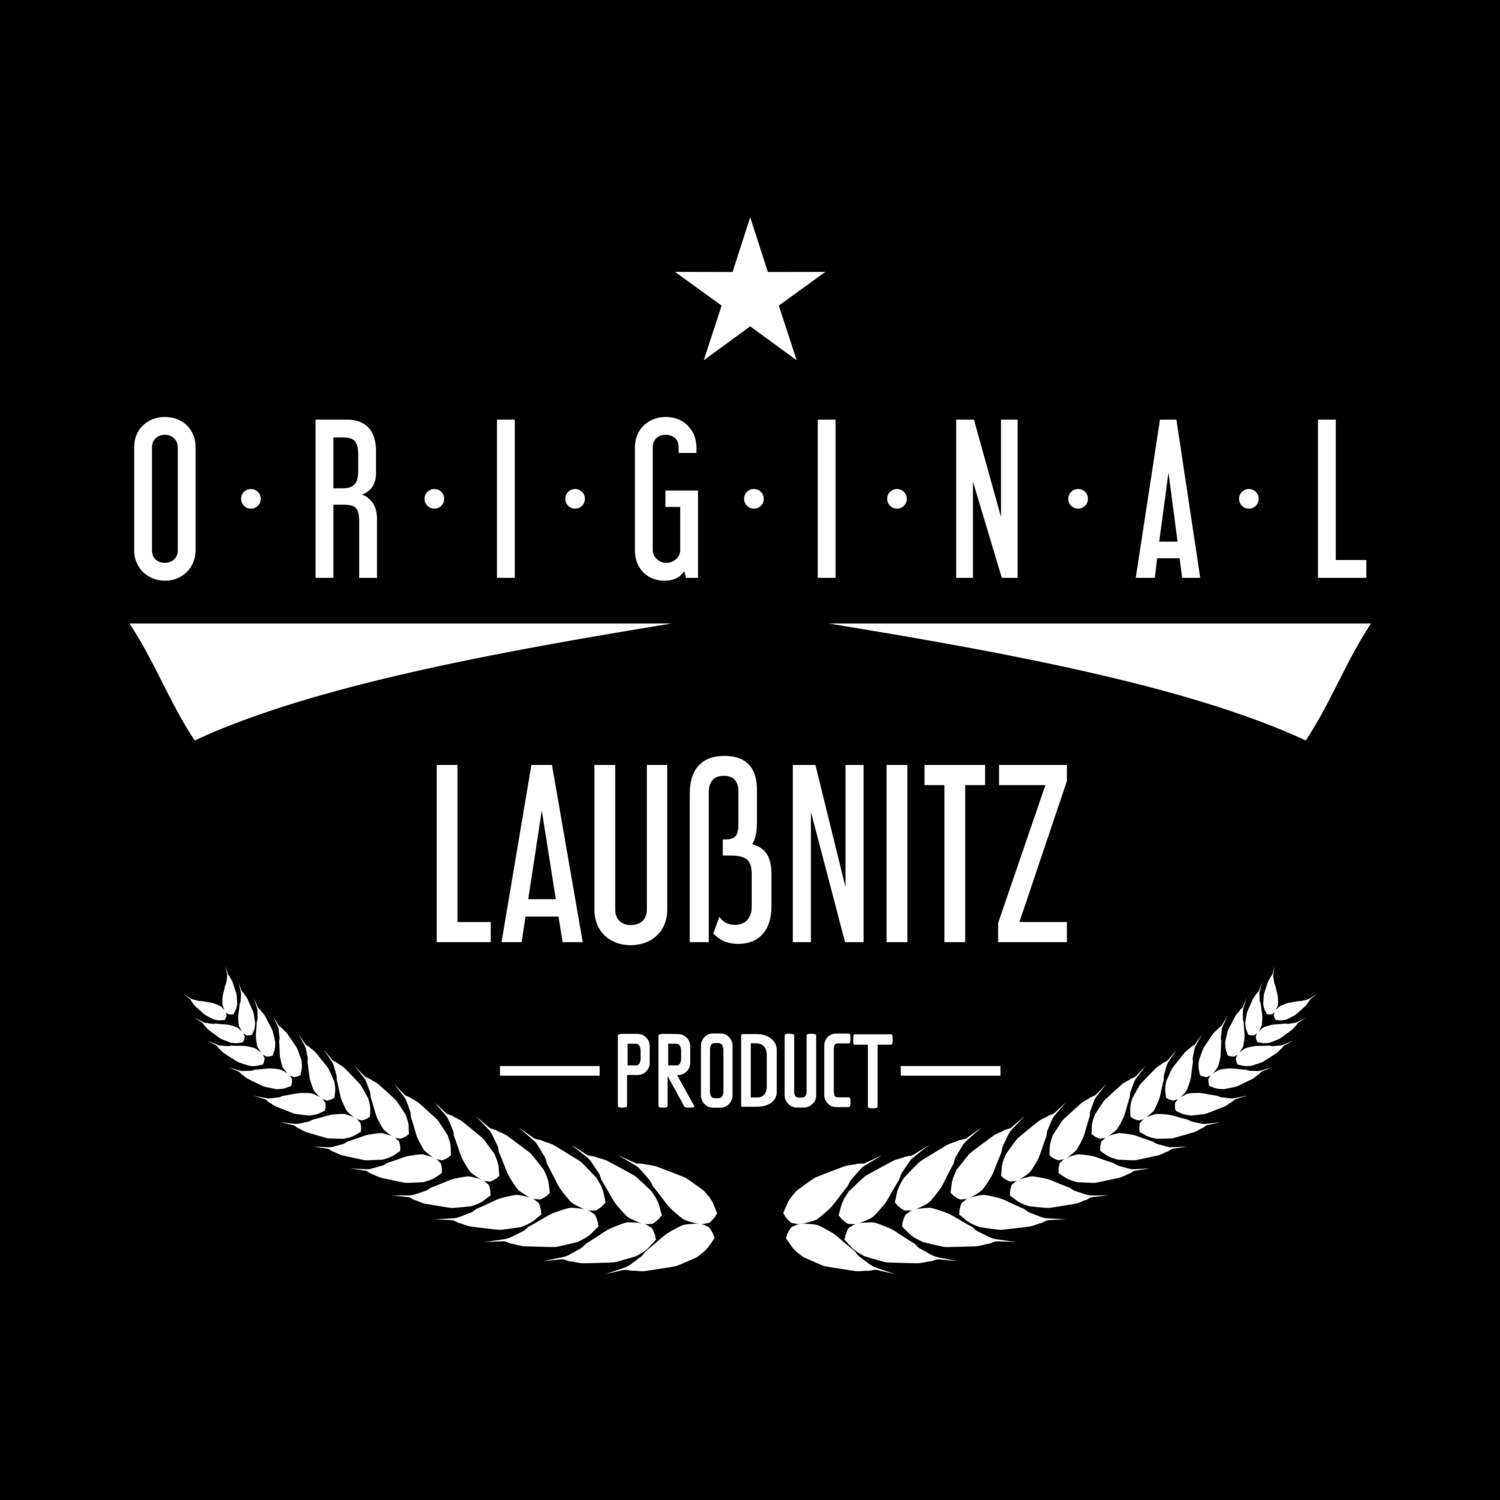 Laußnitz T-Shirt »Original Product«